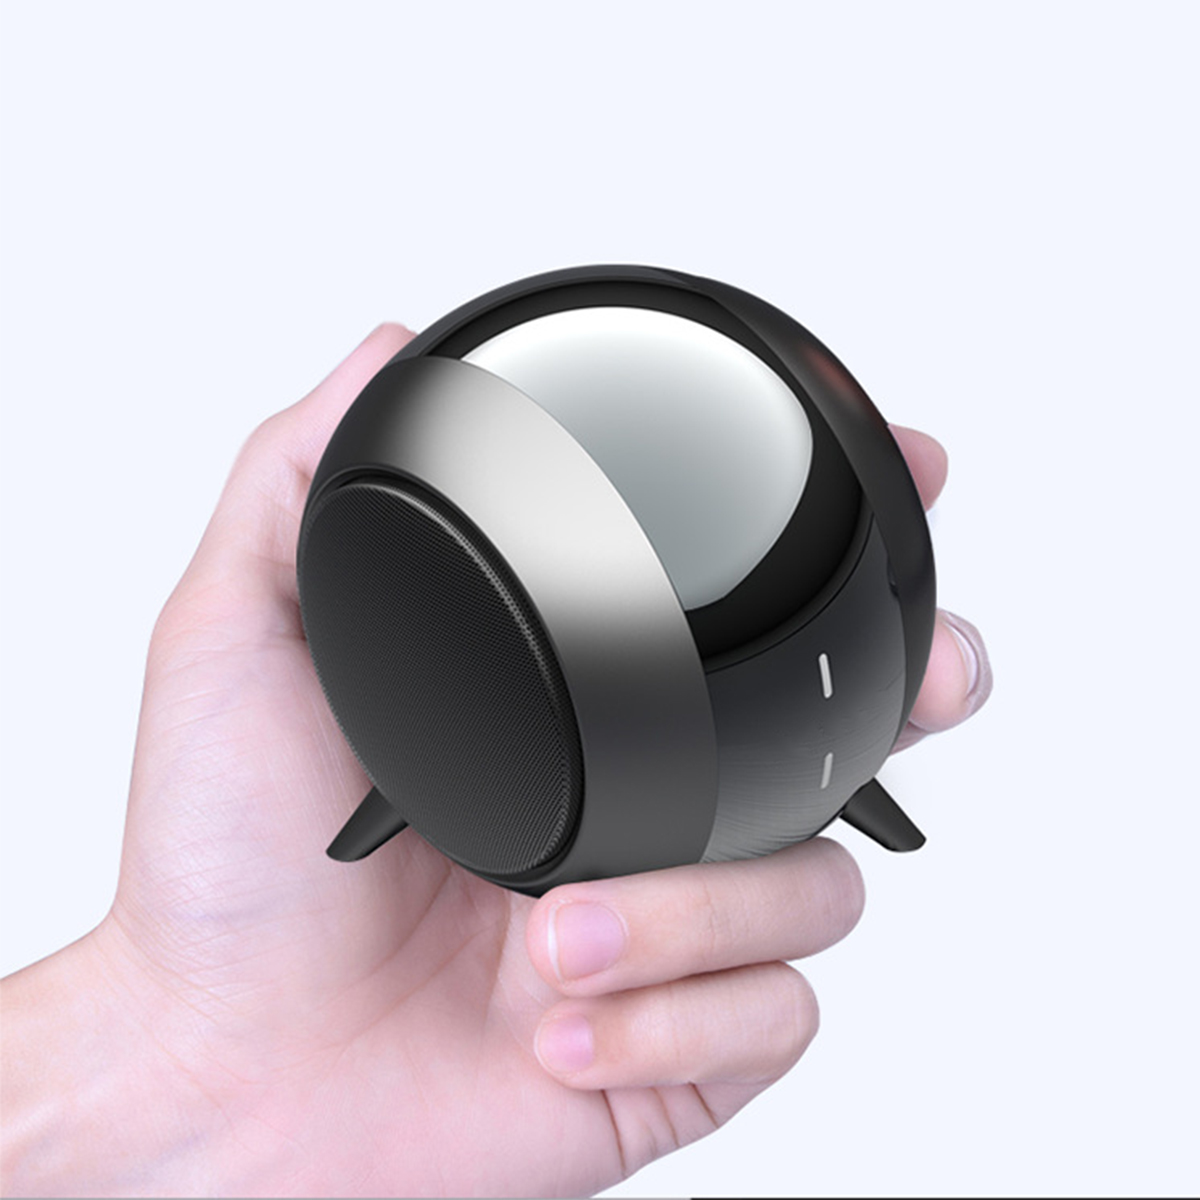 Bluetooth-Lautsprecher: BRIGHTAKE Mini Bluetooth-Lautsprecher, Steel Cannon Schwarz,rot und Portabilität Kabelloser für Power